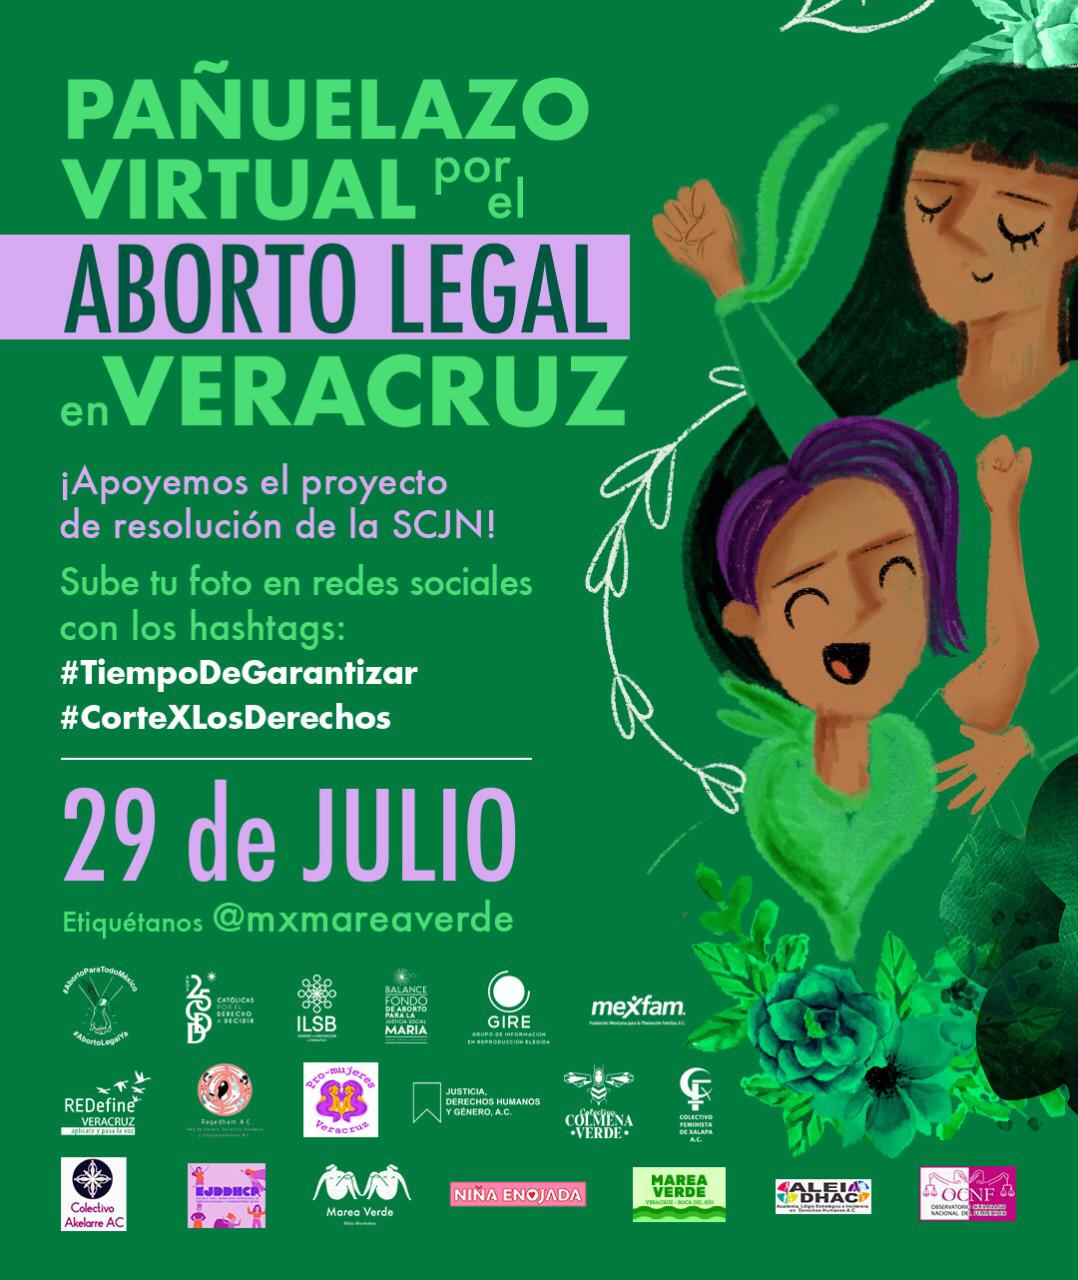 Organizaciones feministas  promueven la campaña “pañuelazo virtual” para este 29 de julio